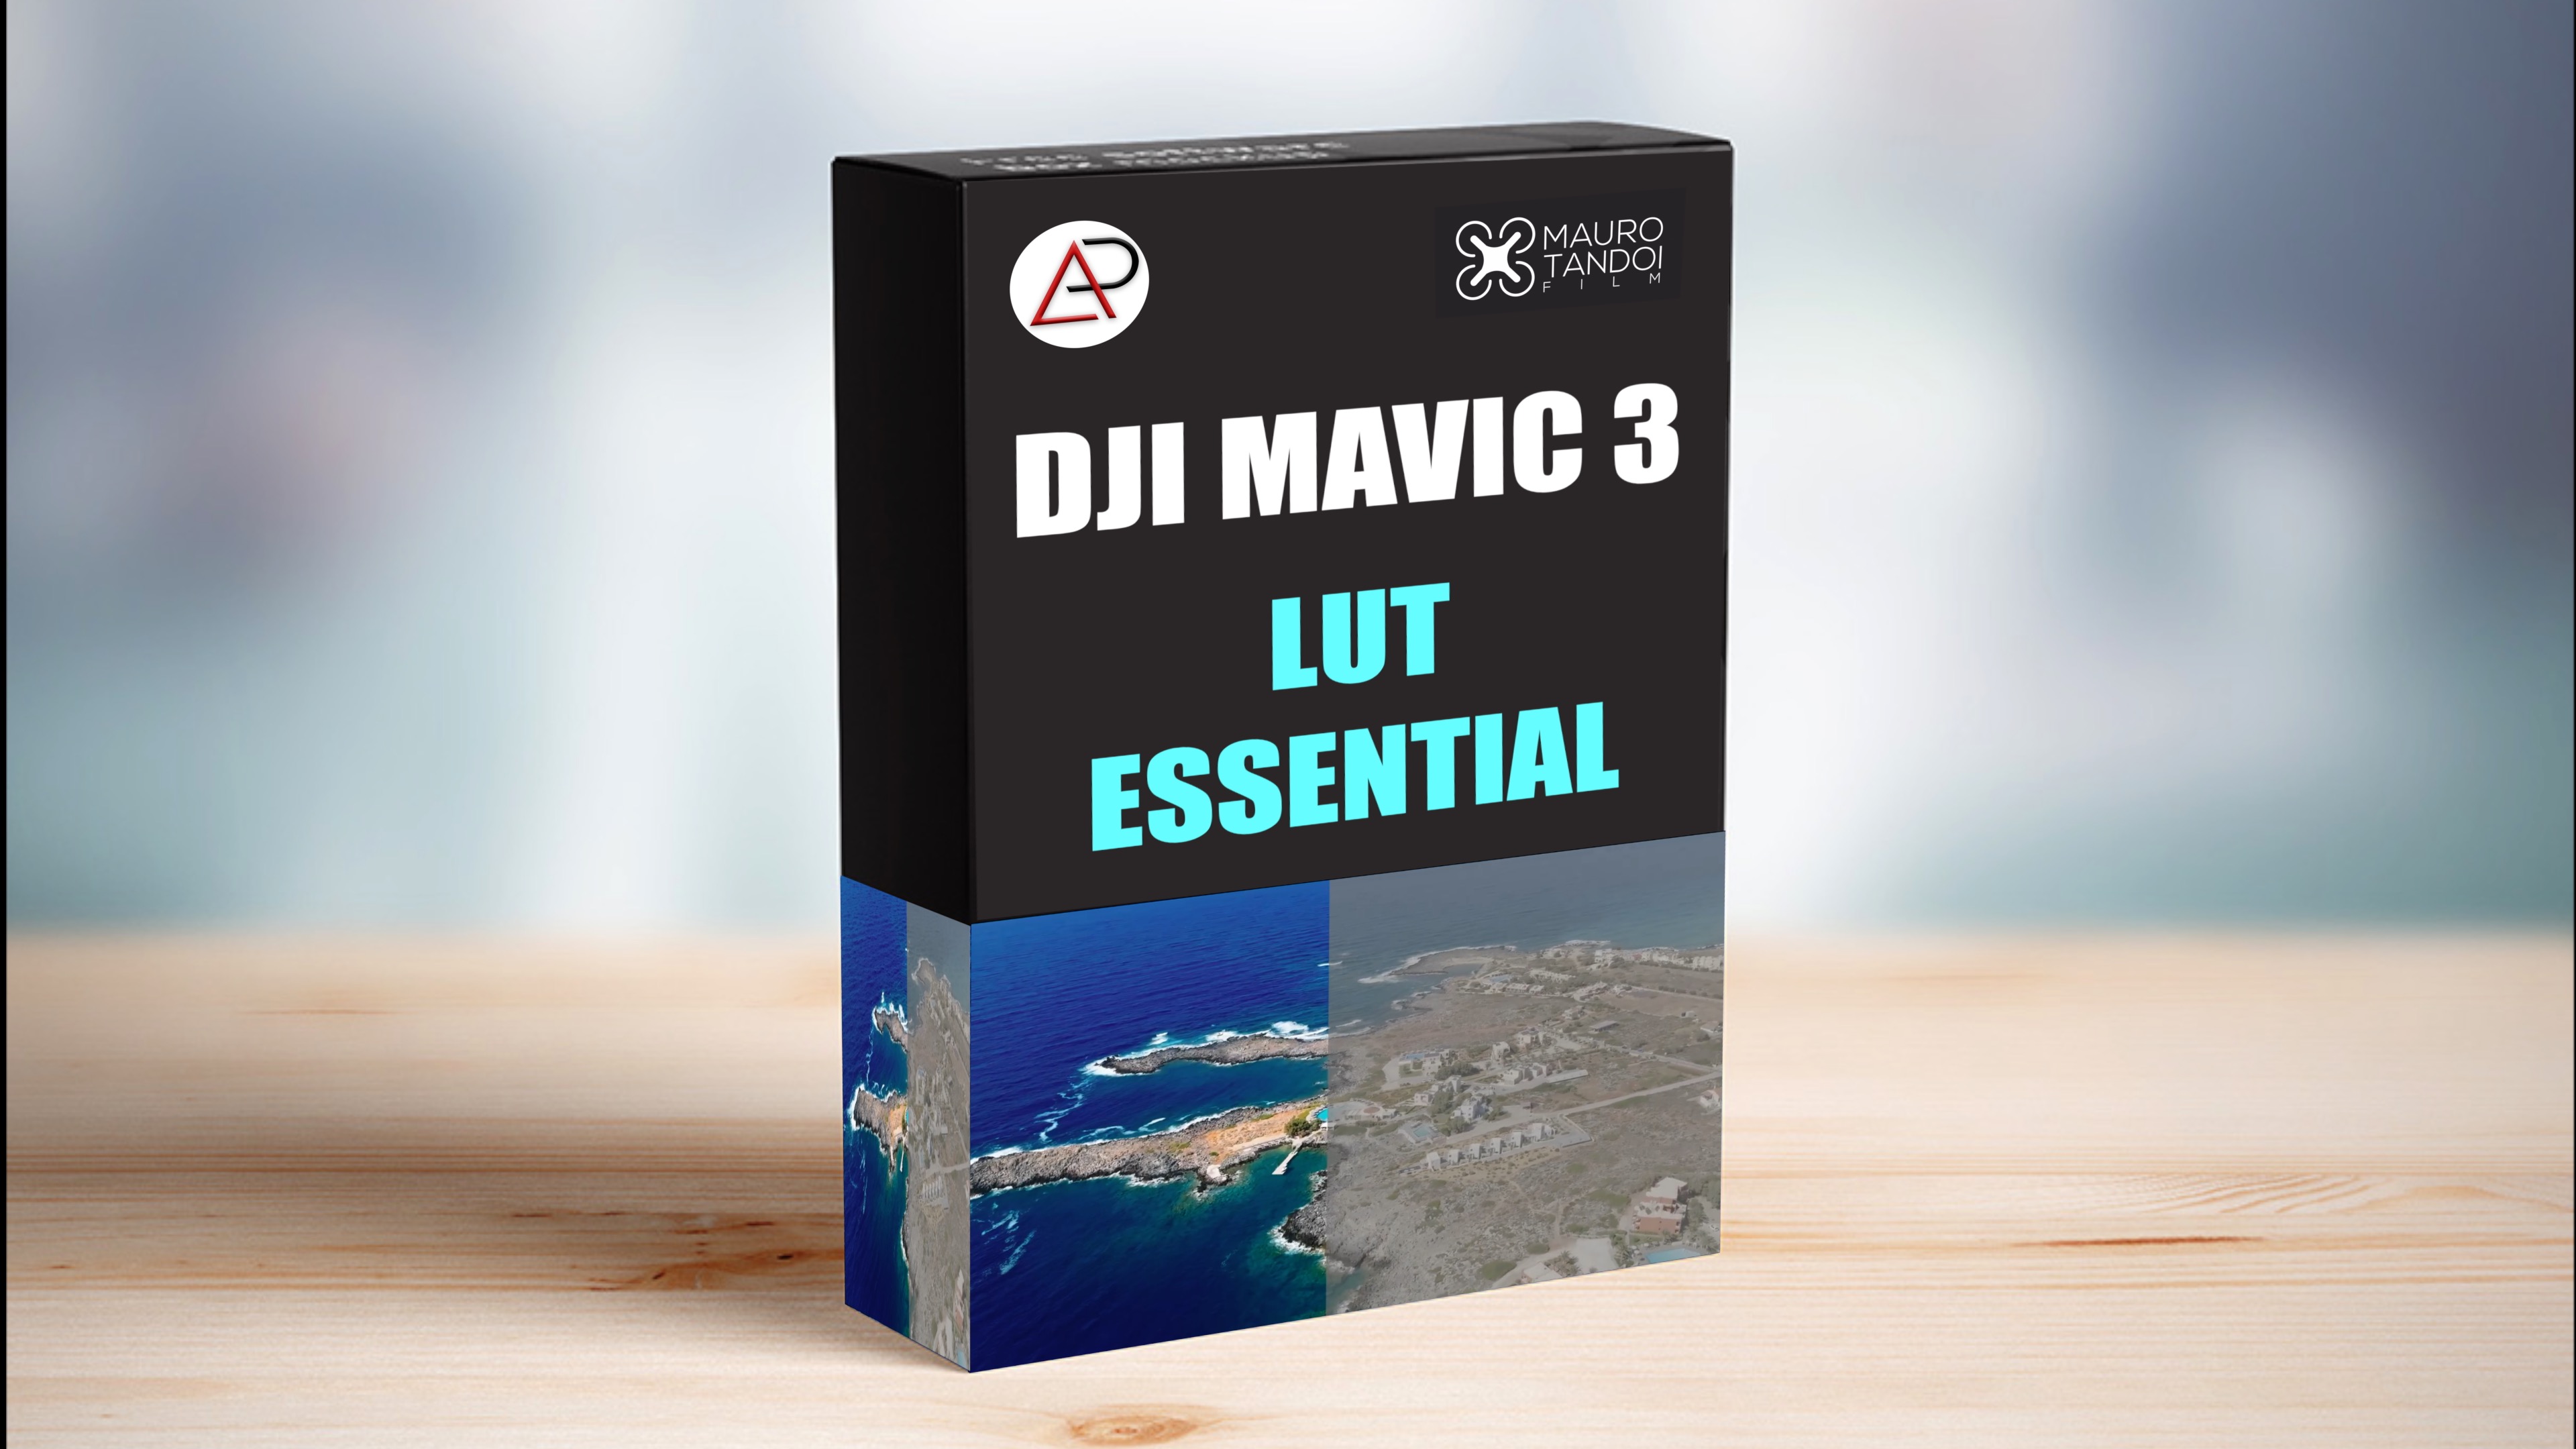 DJI MAVIC 3 LUT ESSENTIAL